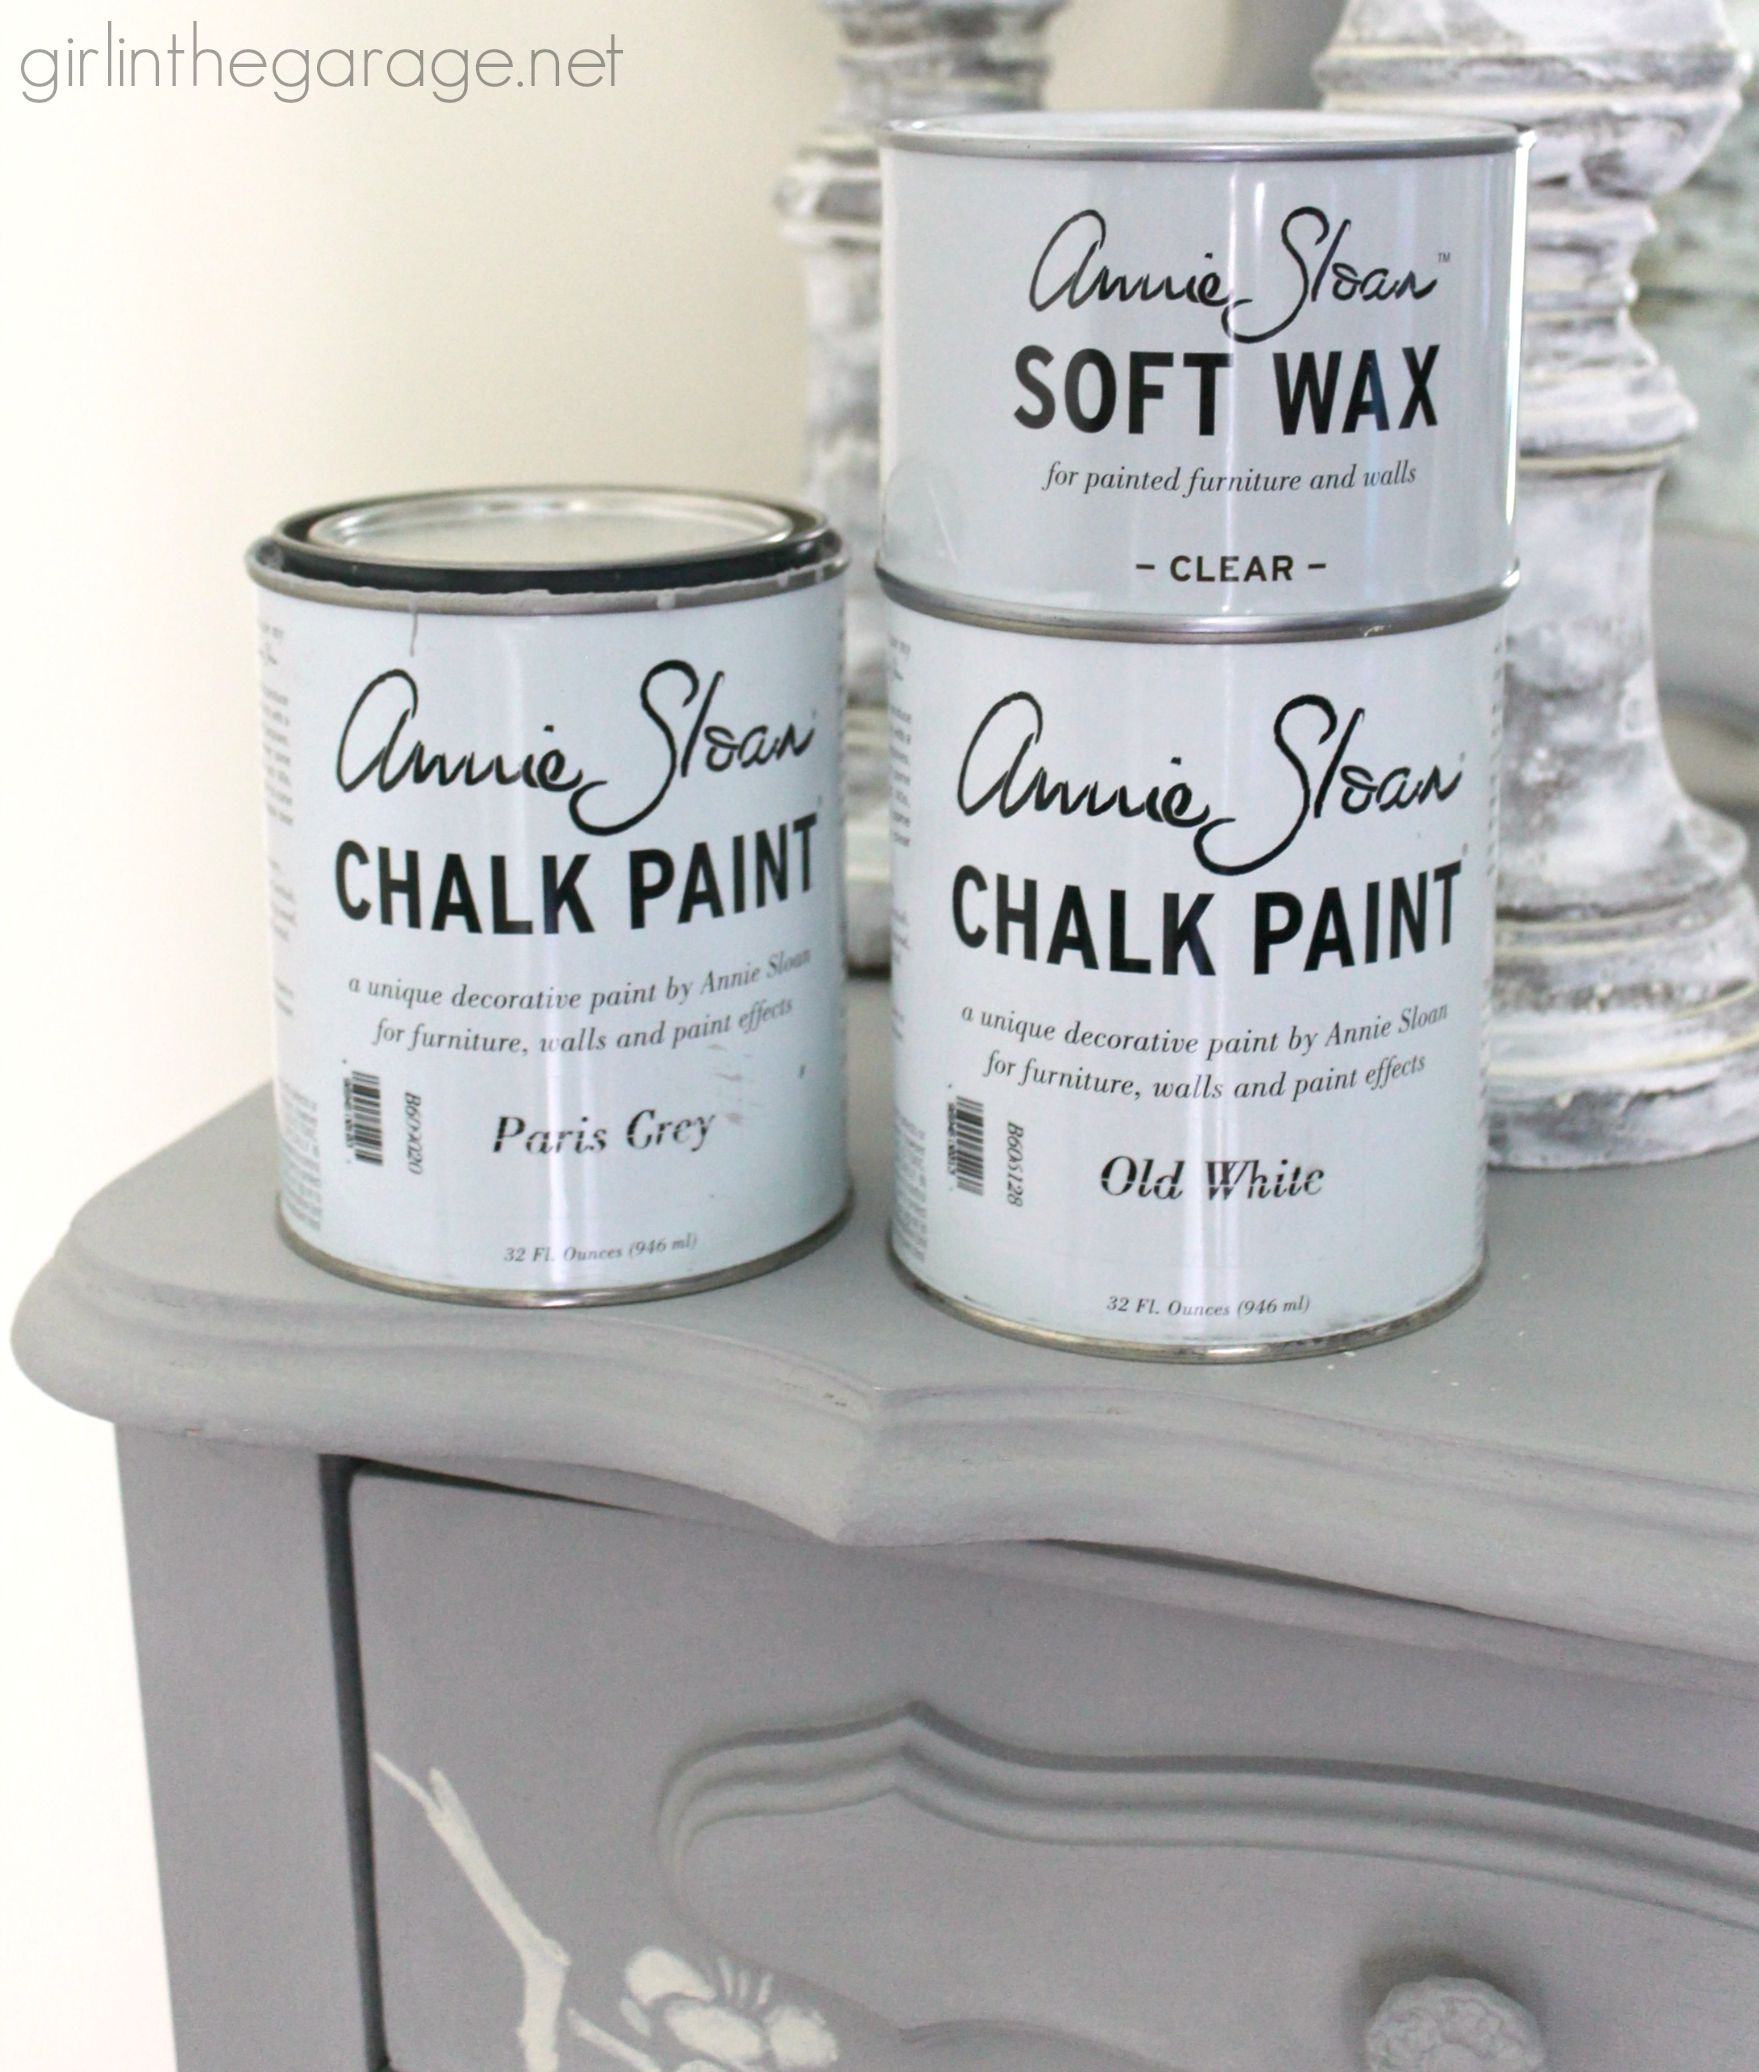 Annie Sloan Chalk Paint - Old White, 1 Liter